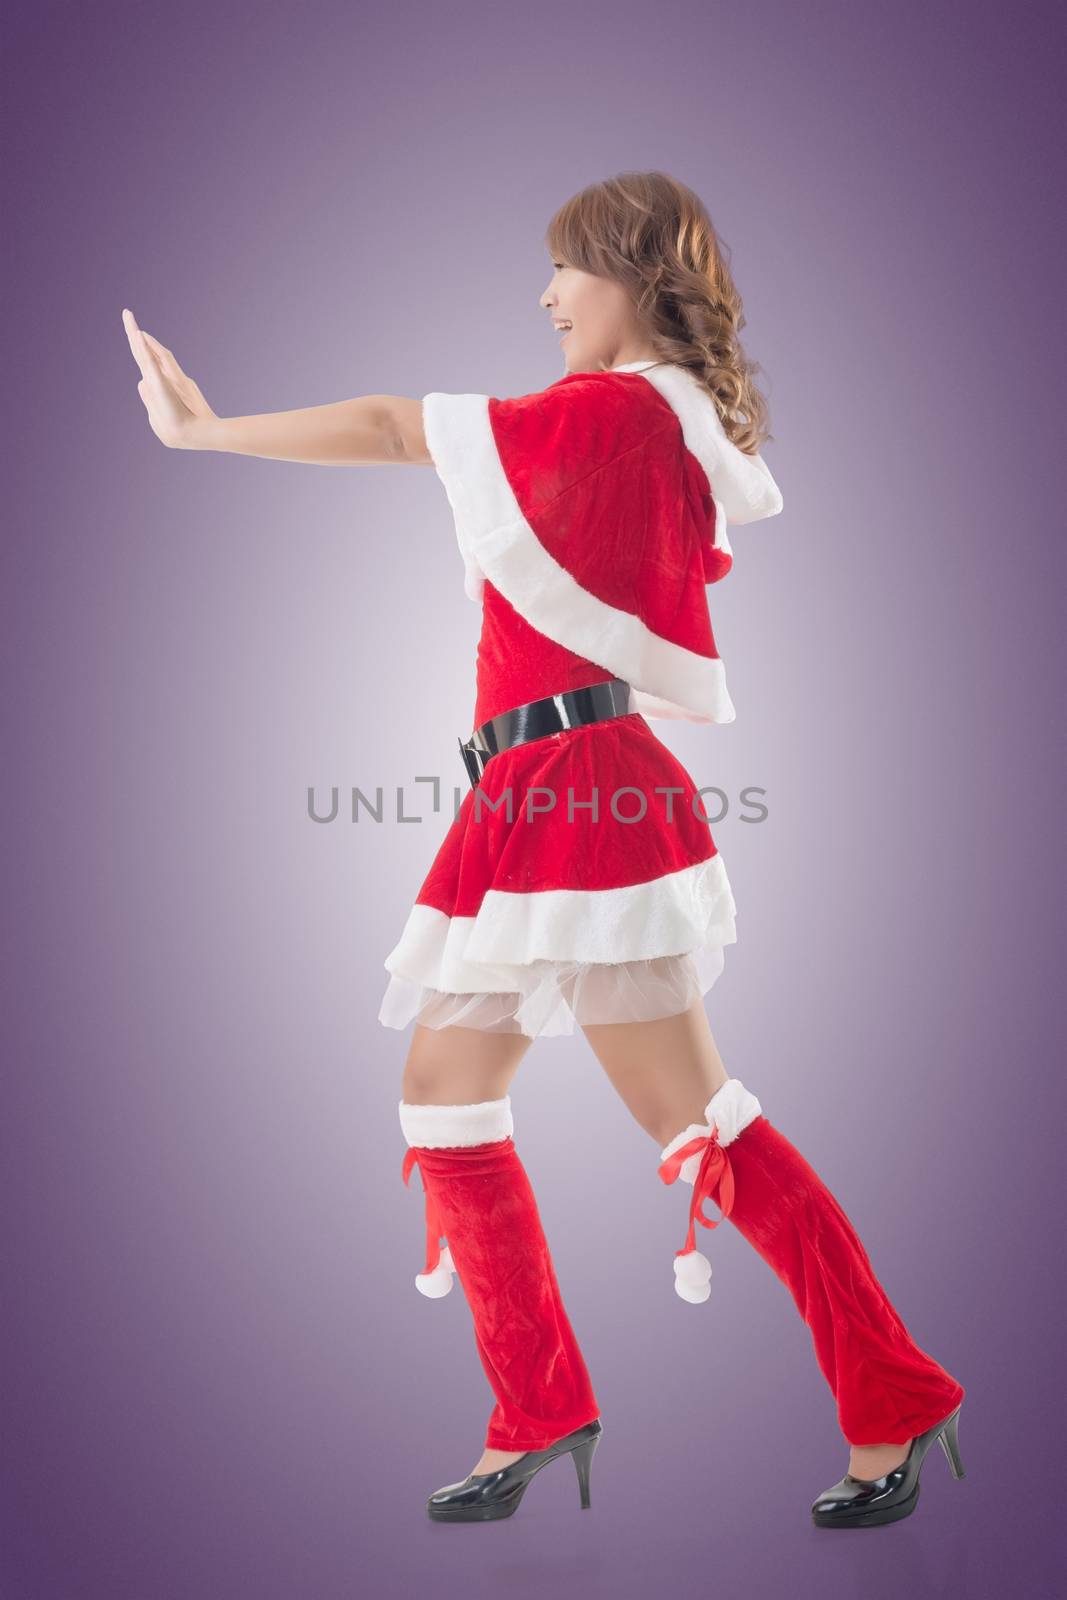 Christmas girl push something, full length pose isolated.